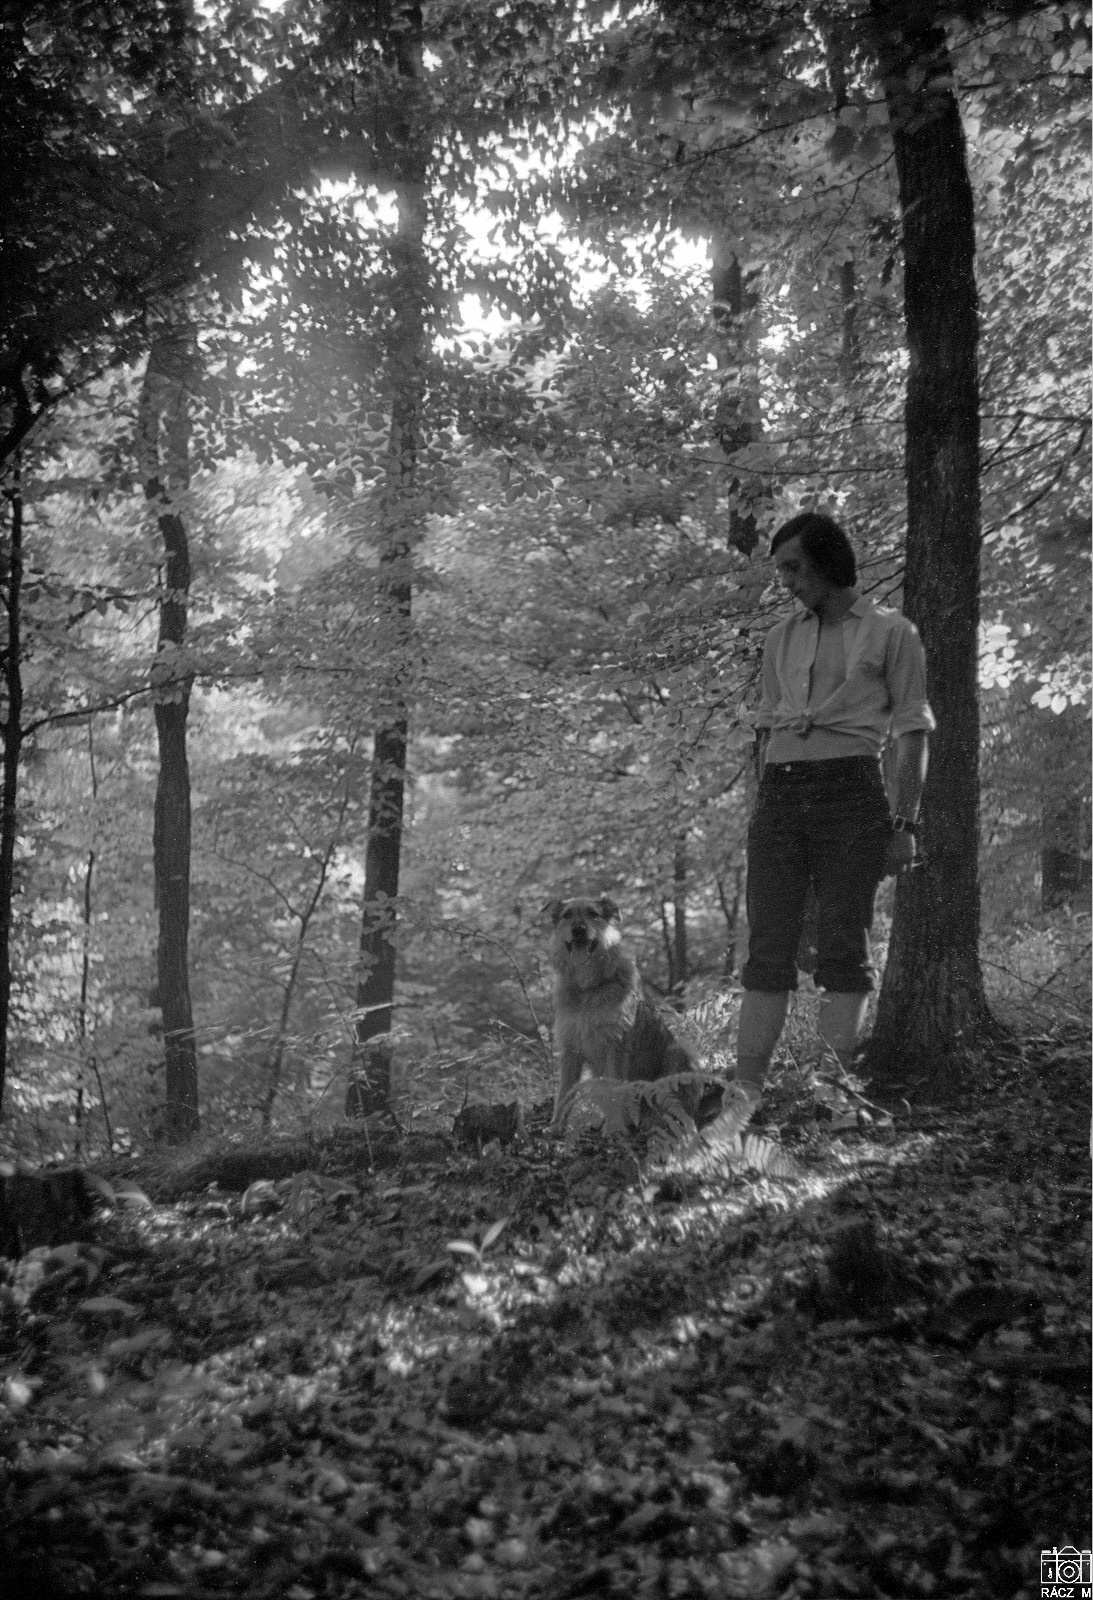 erdőrészlet fiúval és kutyával